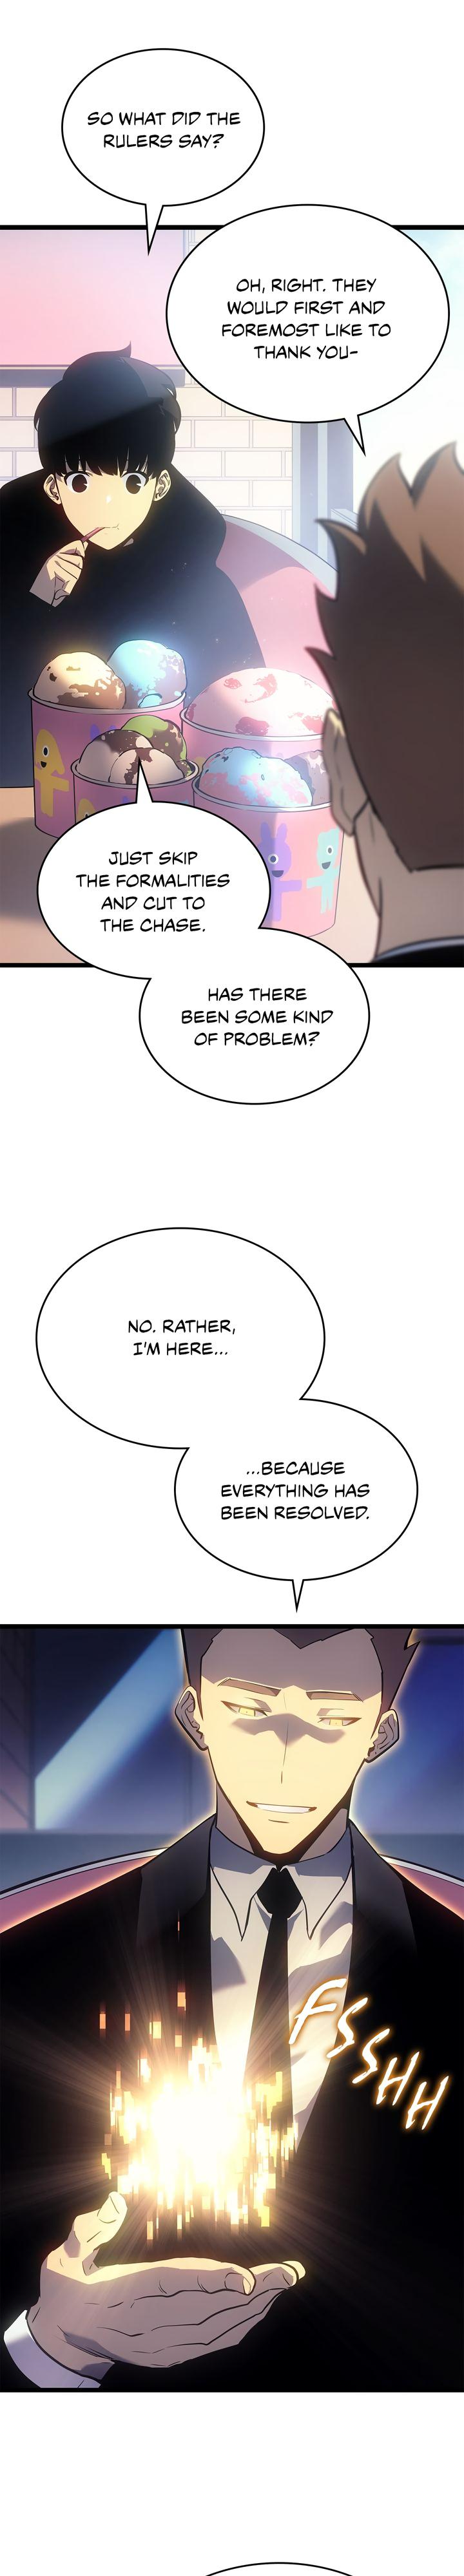 Solo Leveling Manga Manga Chapter - 179 - image 11